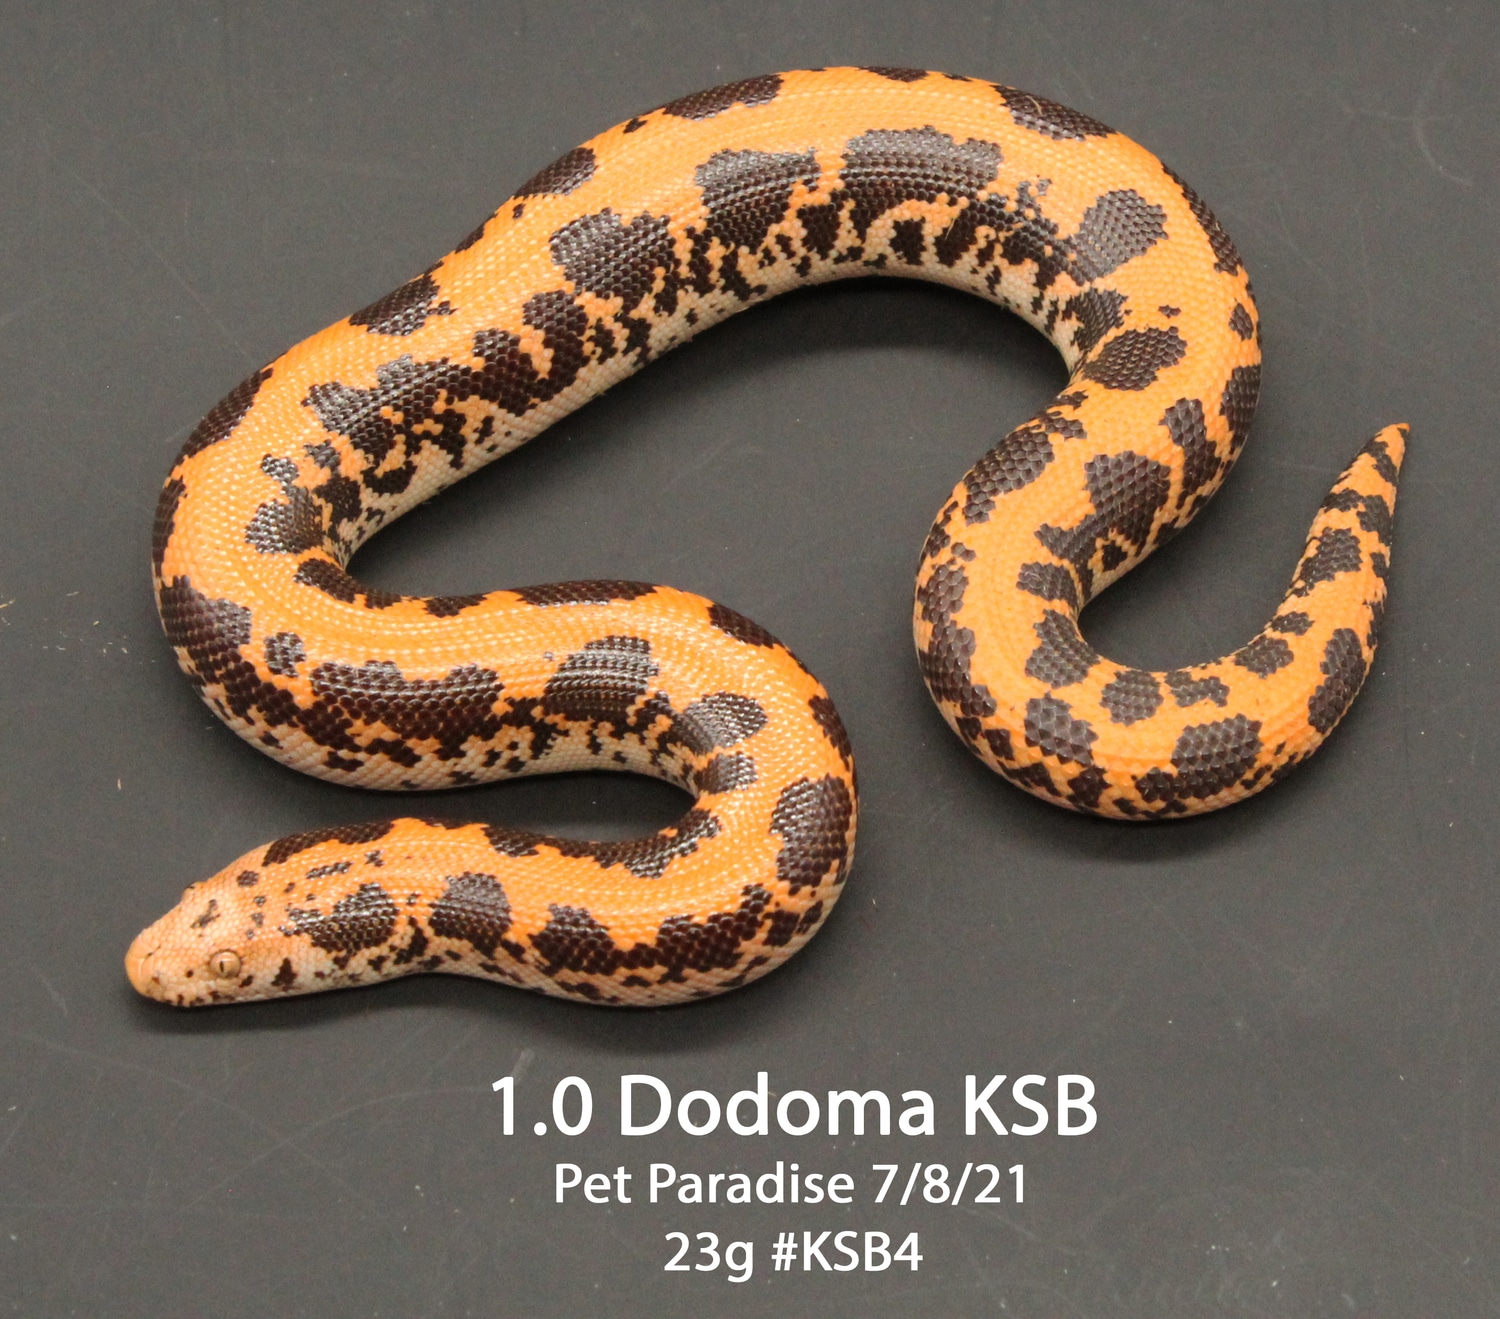 Dodoma Kenyan Sand Boa by Pet Paradise